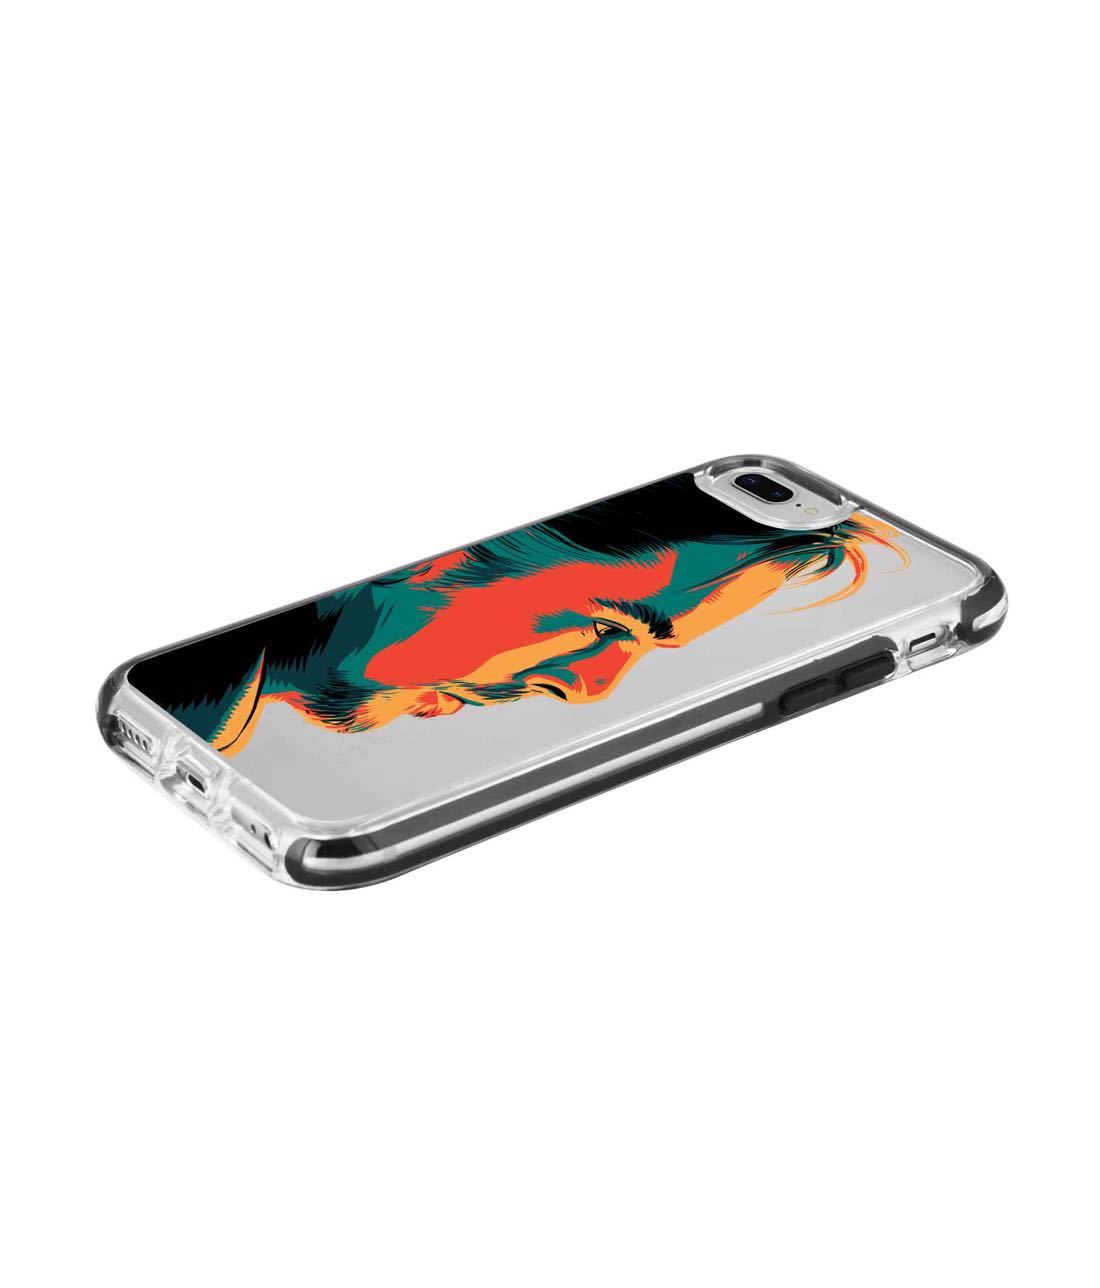 Illuminated Doctor Strange - Extreme Phone Case for iPhone 8 Plus